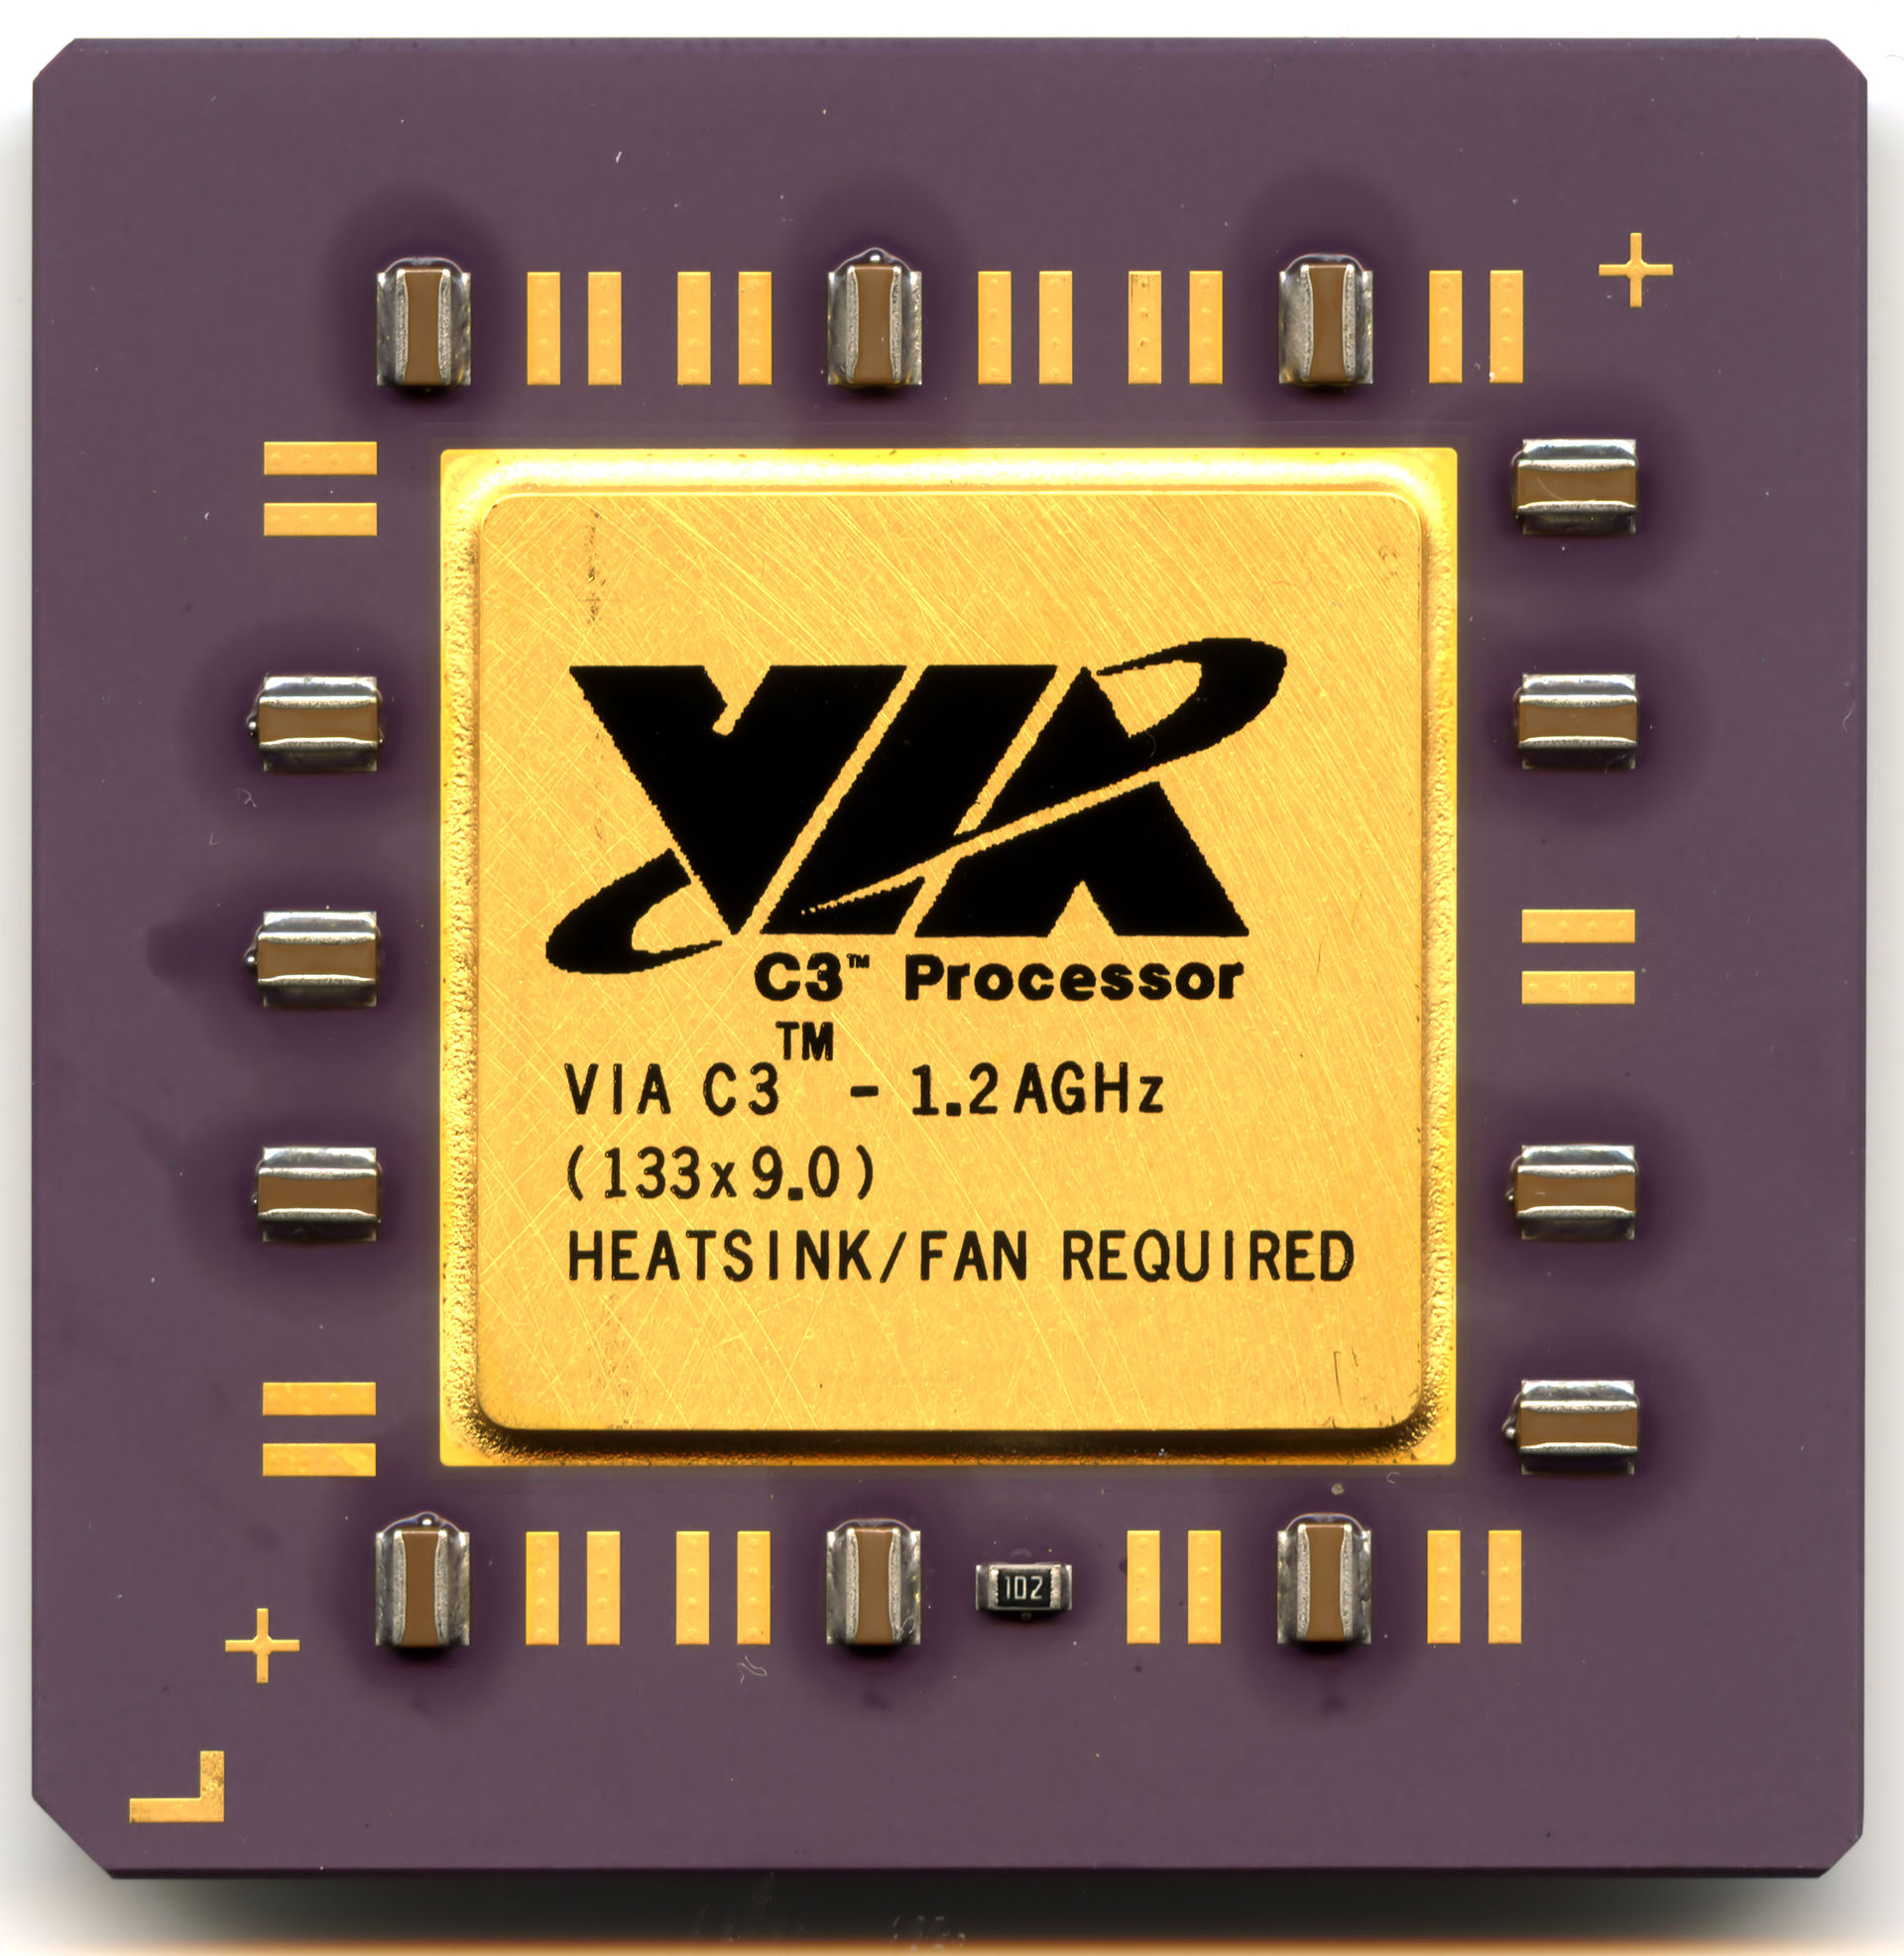 照片中提到了C3" Processor、TM、VIA C3- 1.2 AGHZ，跟威盛電子有關，包含了威盛C3、威盛C3、中央處理器、插座370